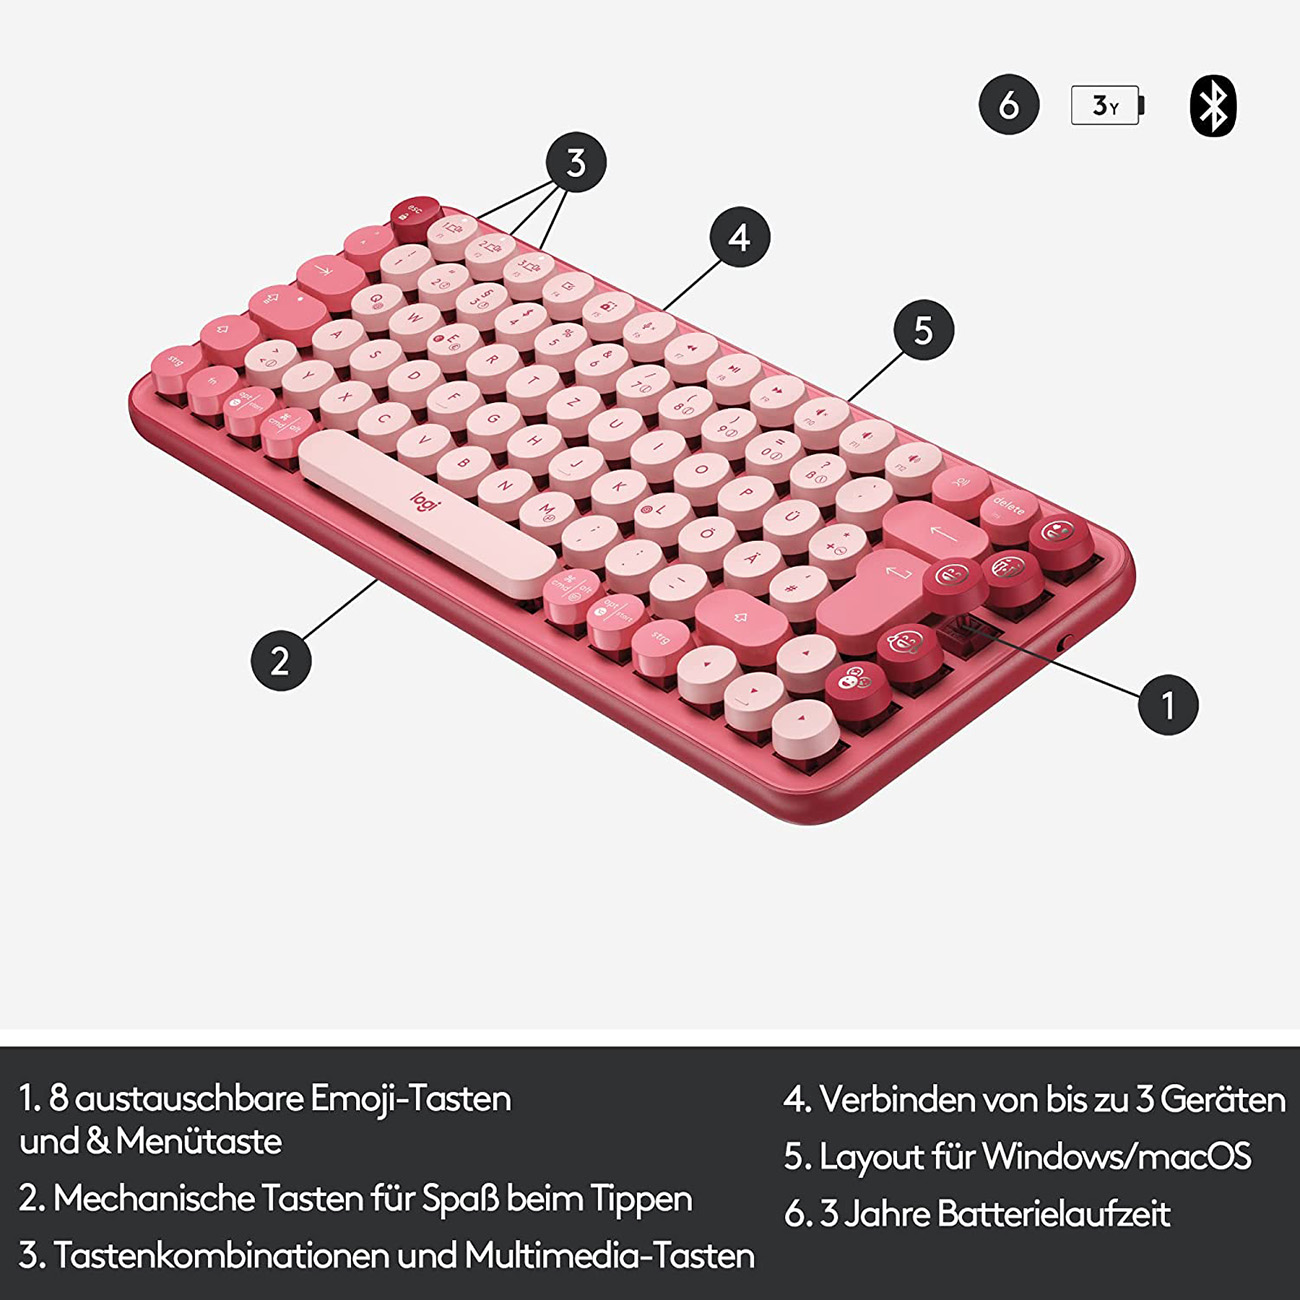 Keys, POP Wireless Tastatur LOGITECH